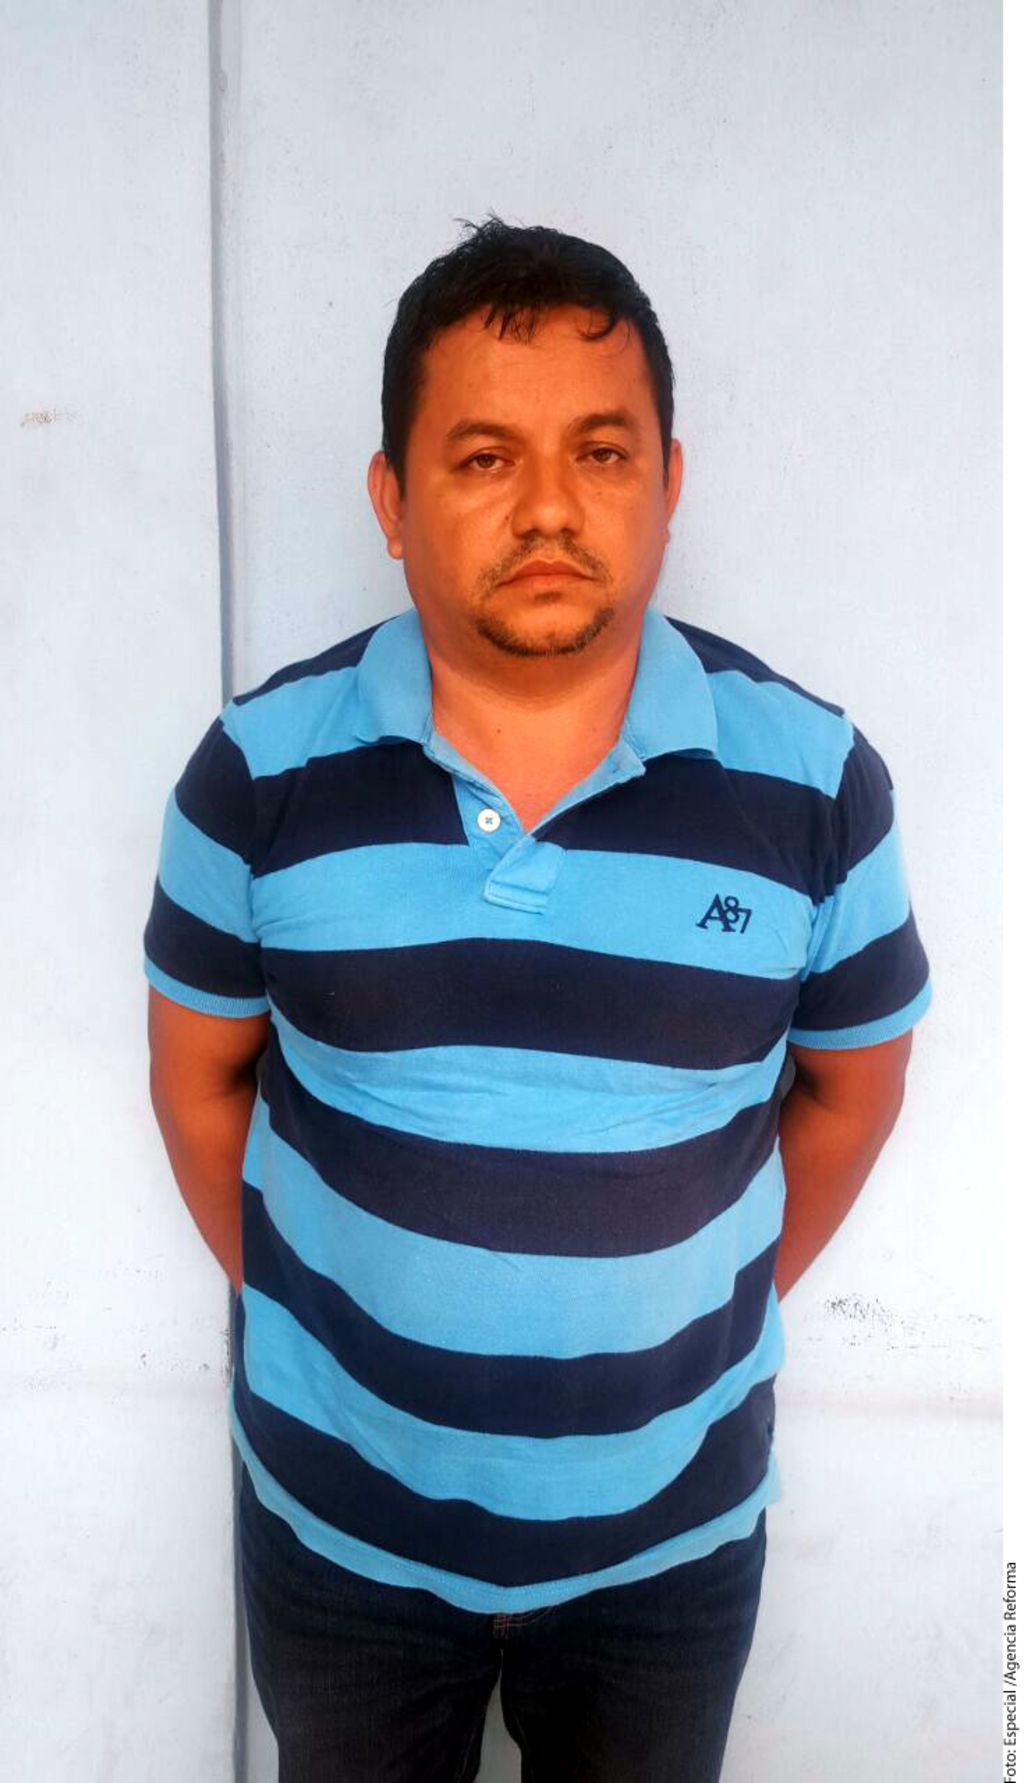 Buscado. Gabino Peralta 'El Pony', buscado en EU por tráfico de drogas, fue capturado en límites de Michoacán y Guerrero.
